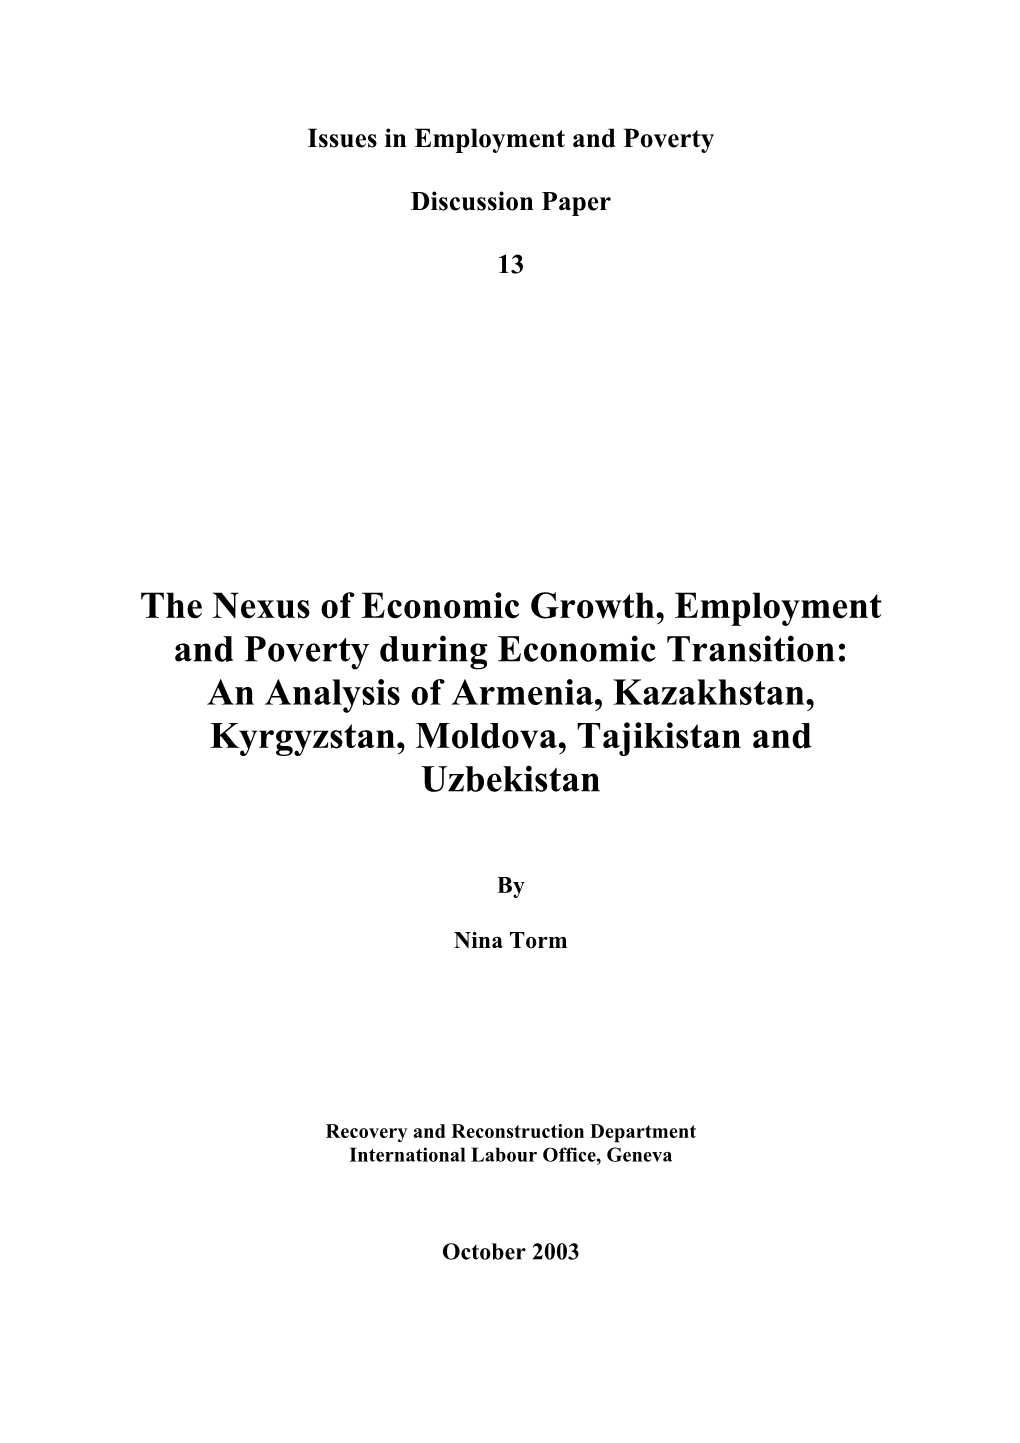 The Nexus of Economic Growth, Employment and Poverty During Economic Transition: an Analysis of Armenia, Kazakhstan, Kyrgyzstan, Moldova, Tajikistan and Uzbekistan